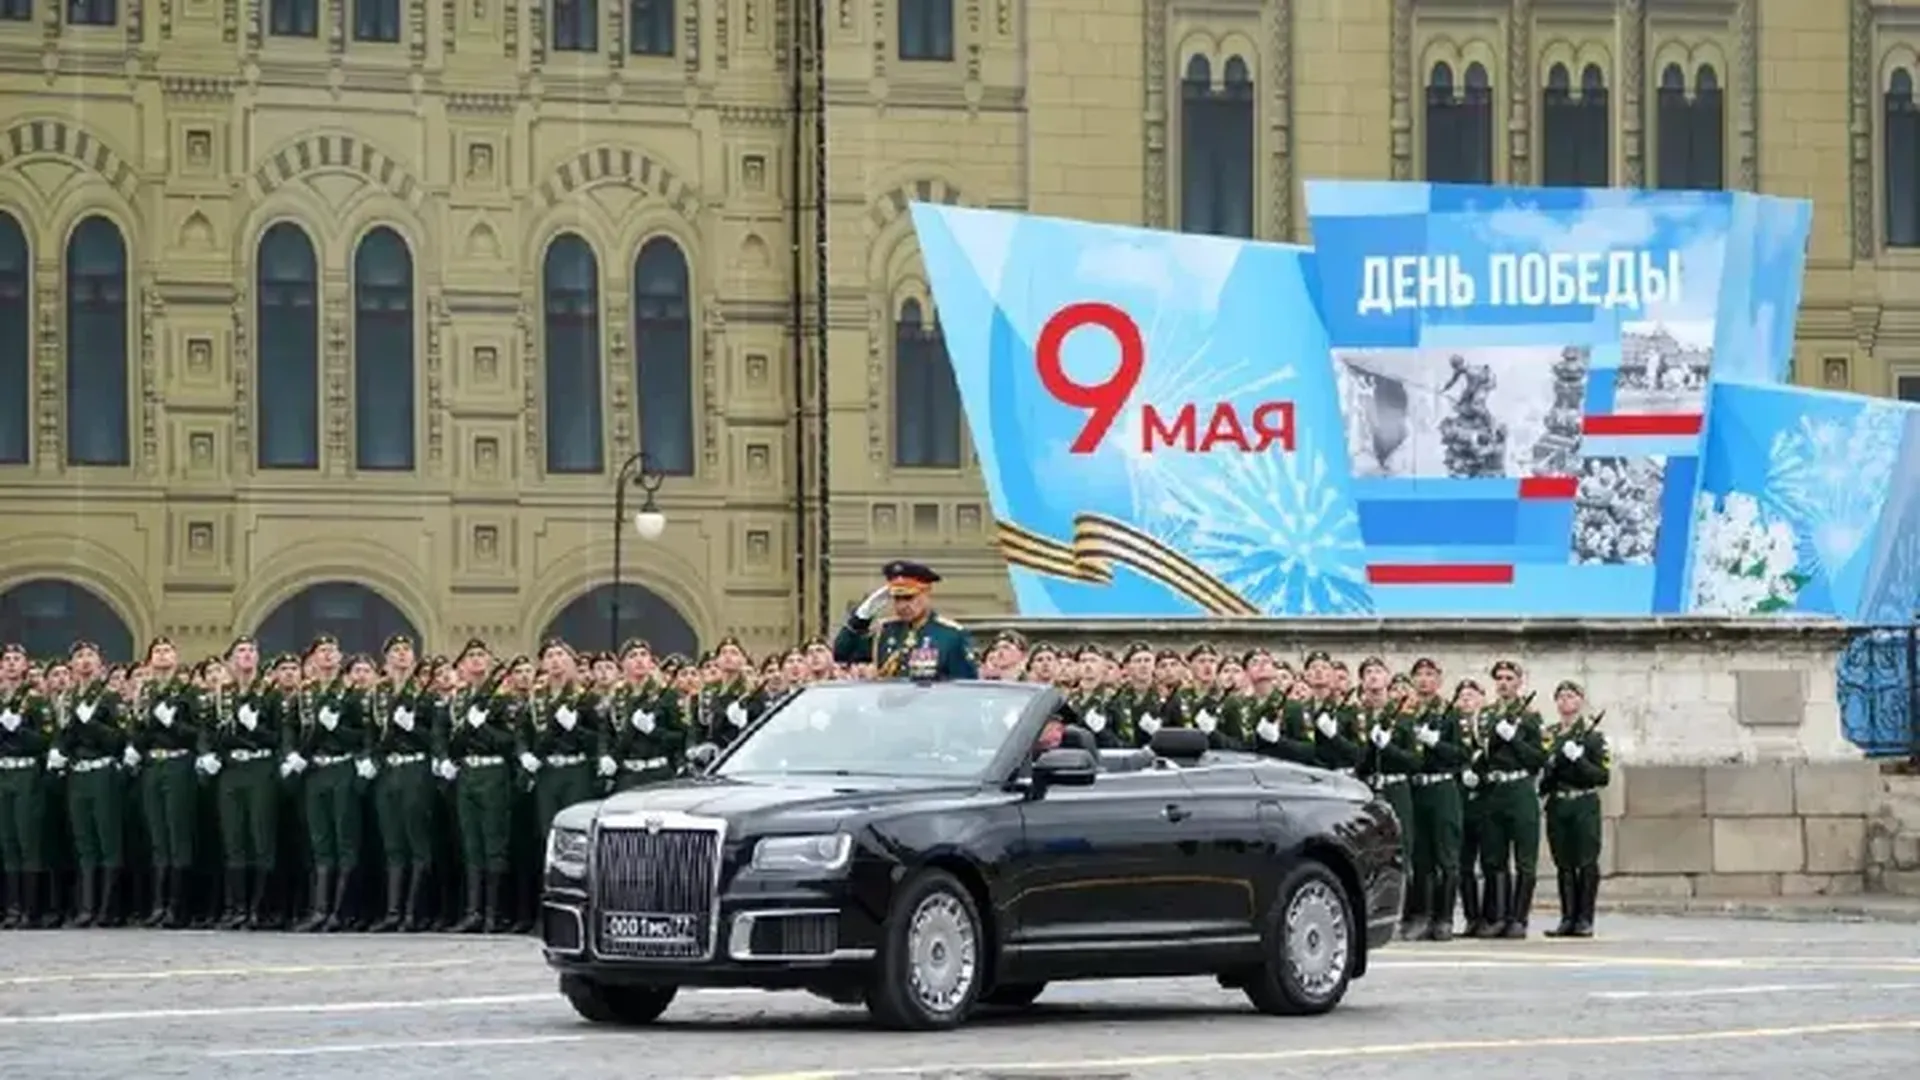 Хакеры взломали украинские телеканалы, показав парад Победы на Красной площади с Путиным